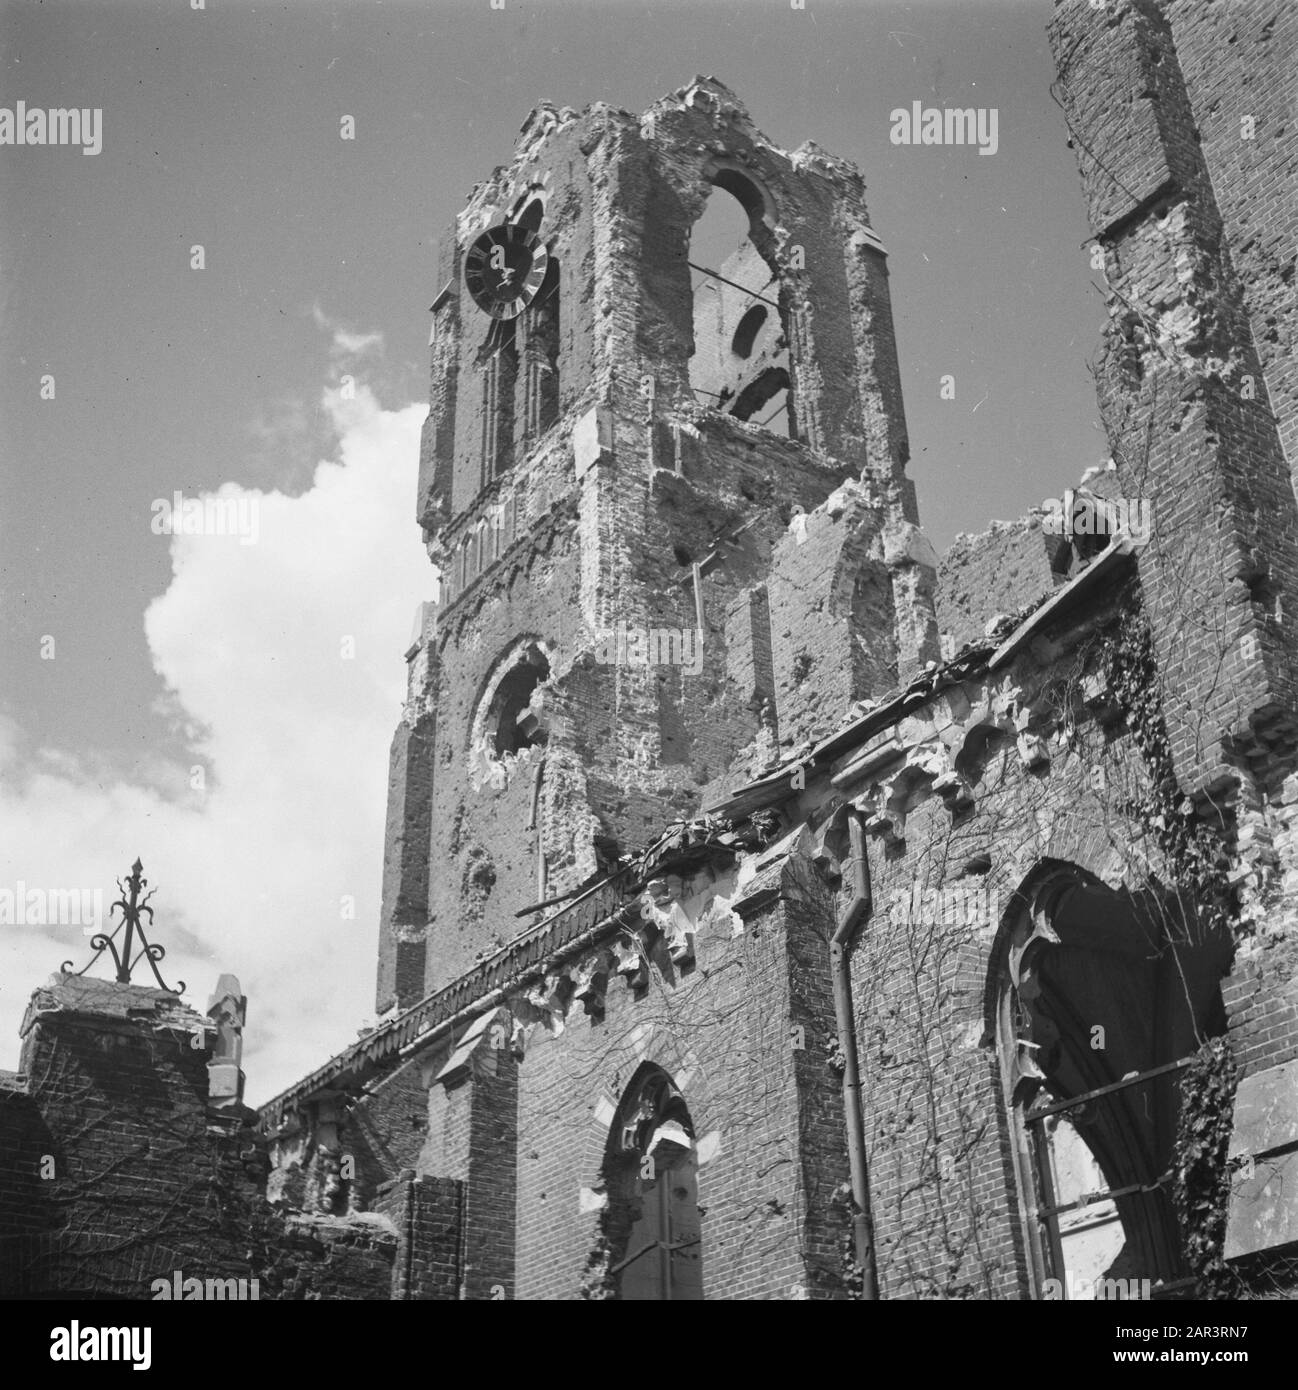 Devastations: Hedel  Vernielingen te Hedel Date: 1945 Location: Hedel Keywords: Second World War, destruction Stock Photo